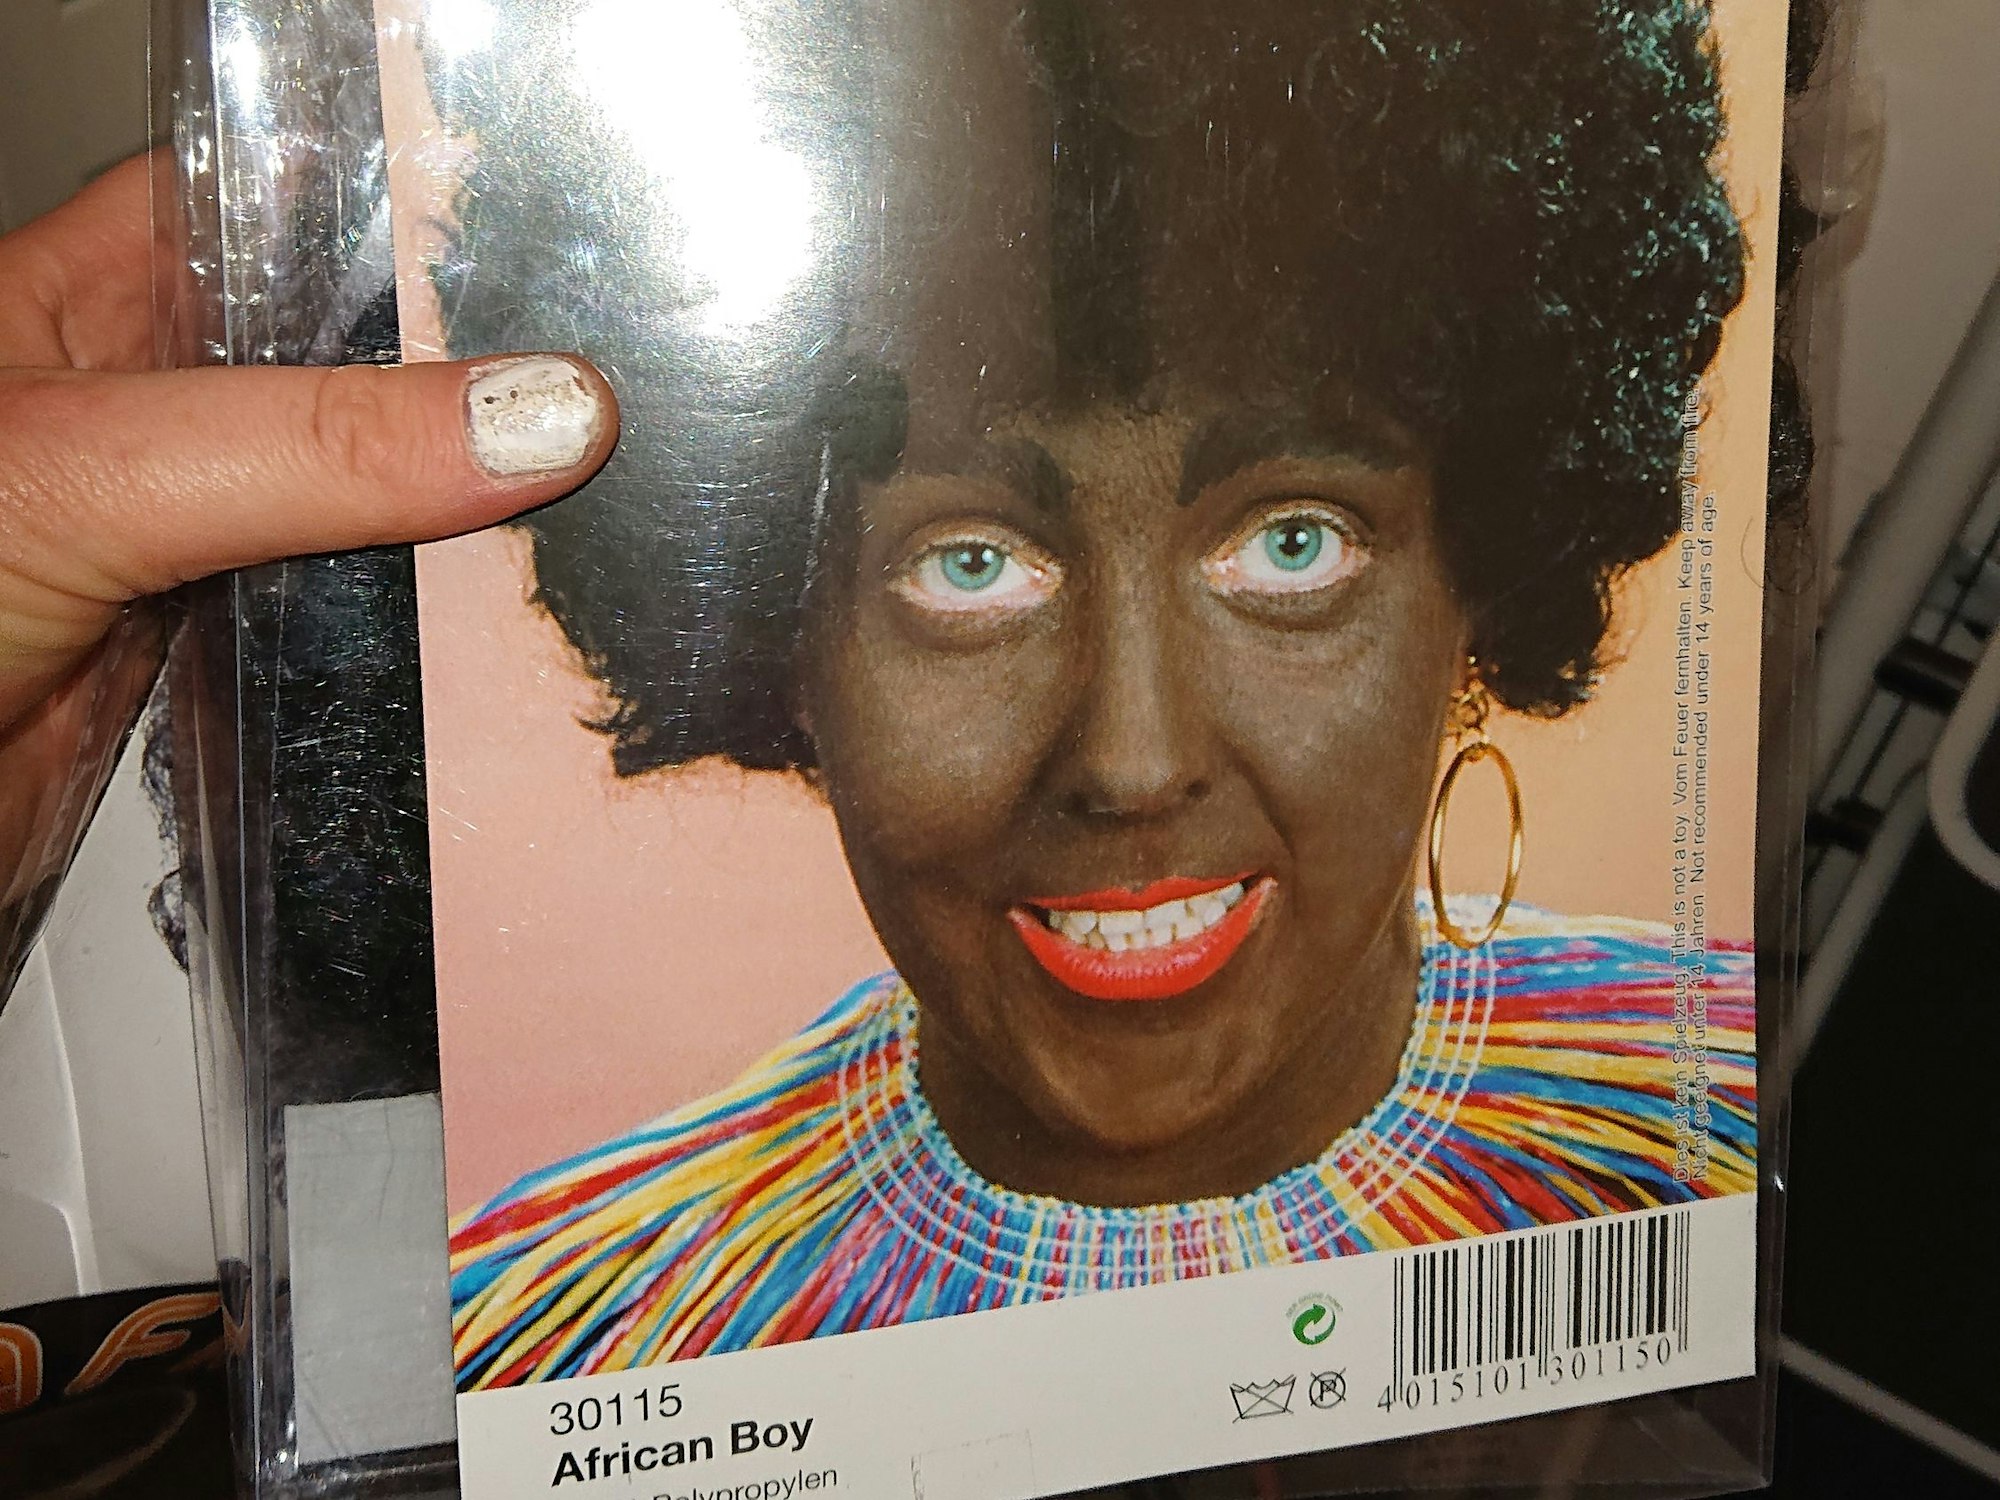 Eine schwarze Perücke als Karnevalskostüm mit der Verpackungsaufschrift „African Boy“. Auf dem Bild ist eine hellhäutige Frau abgebildet, die ihr Gesicht dunkelbraun geschminkt hat.